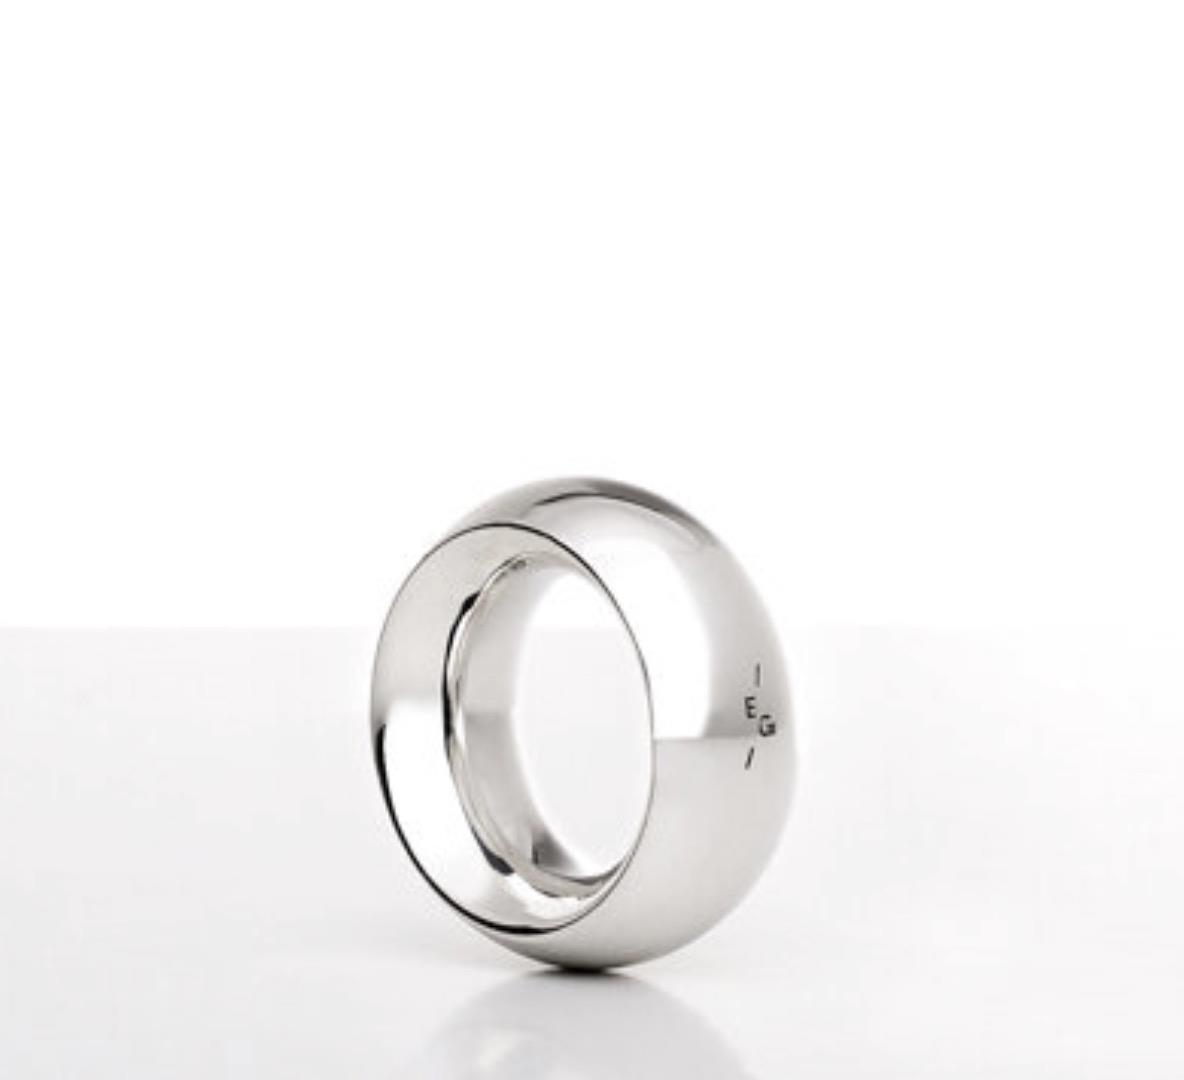 Ring massiv 925 Silber navette - Emil Brenk - 020504